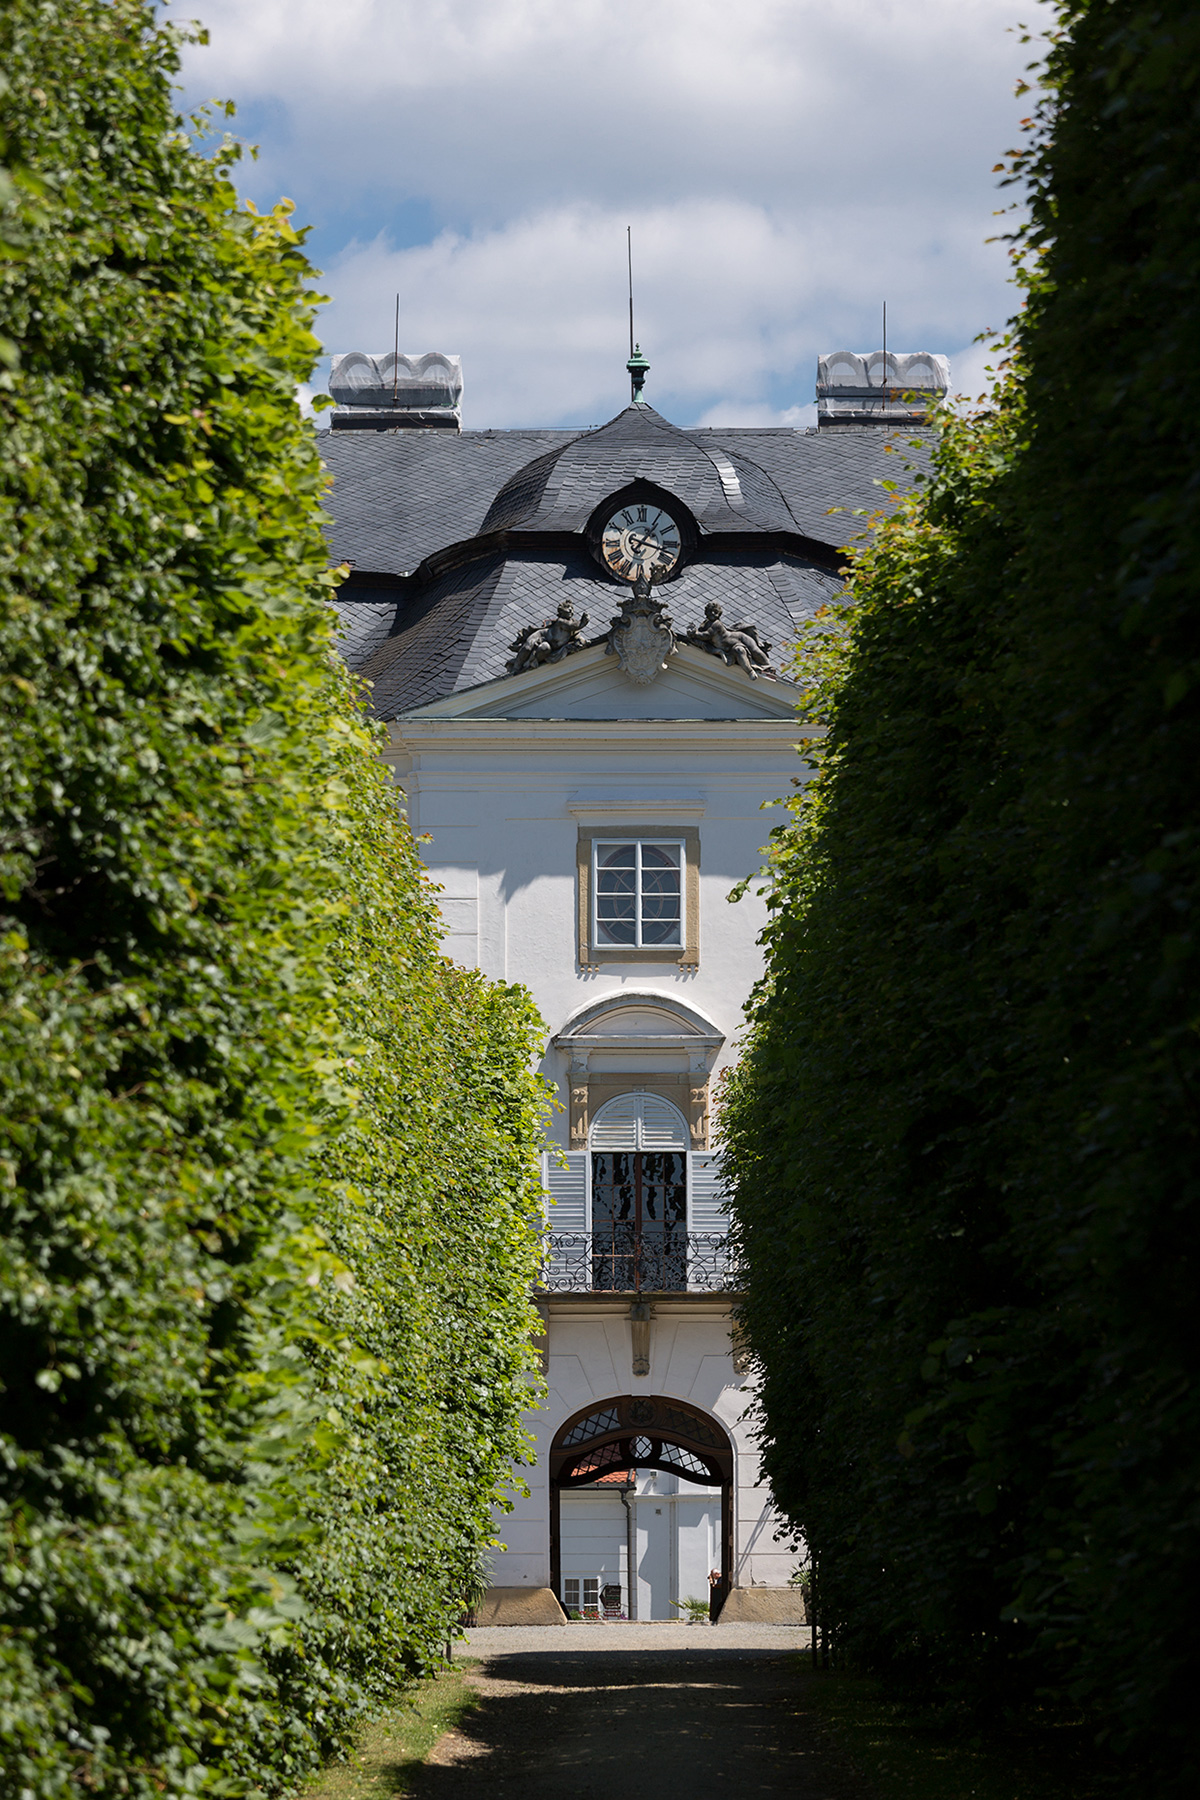 Státní zámek Vizovice